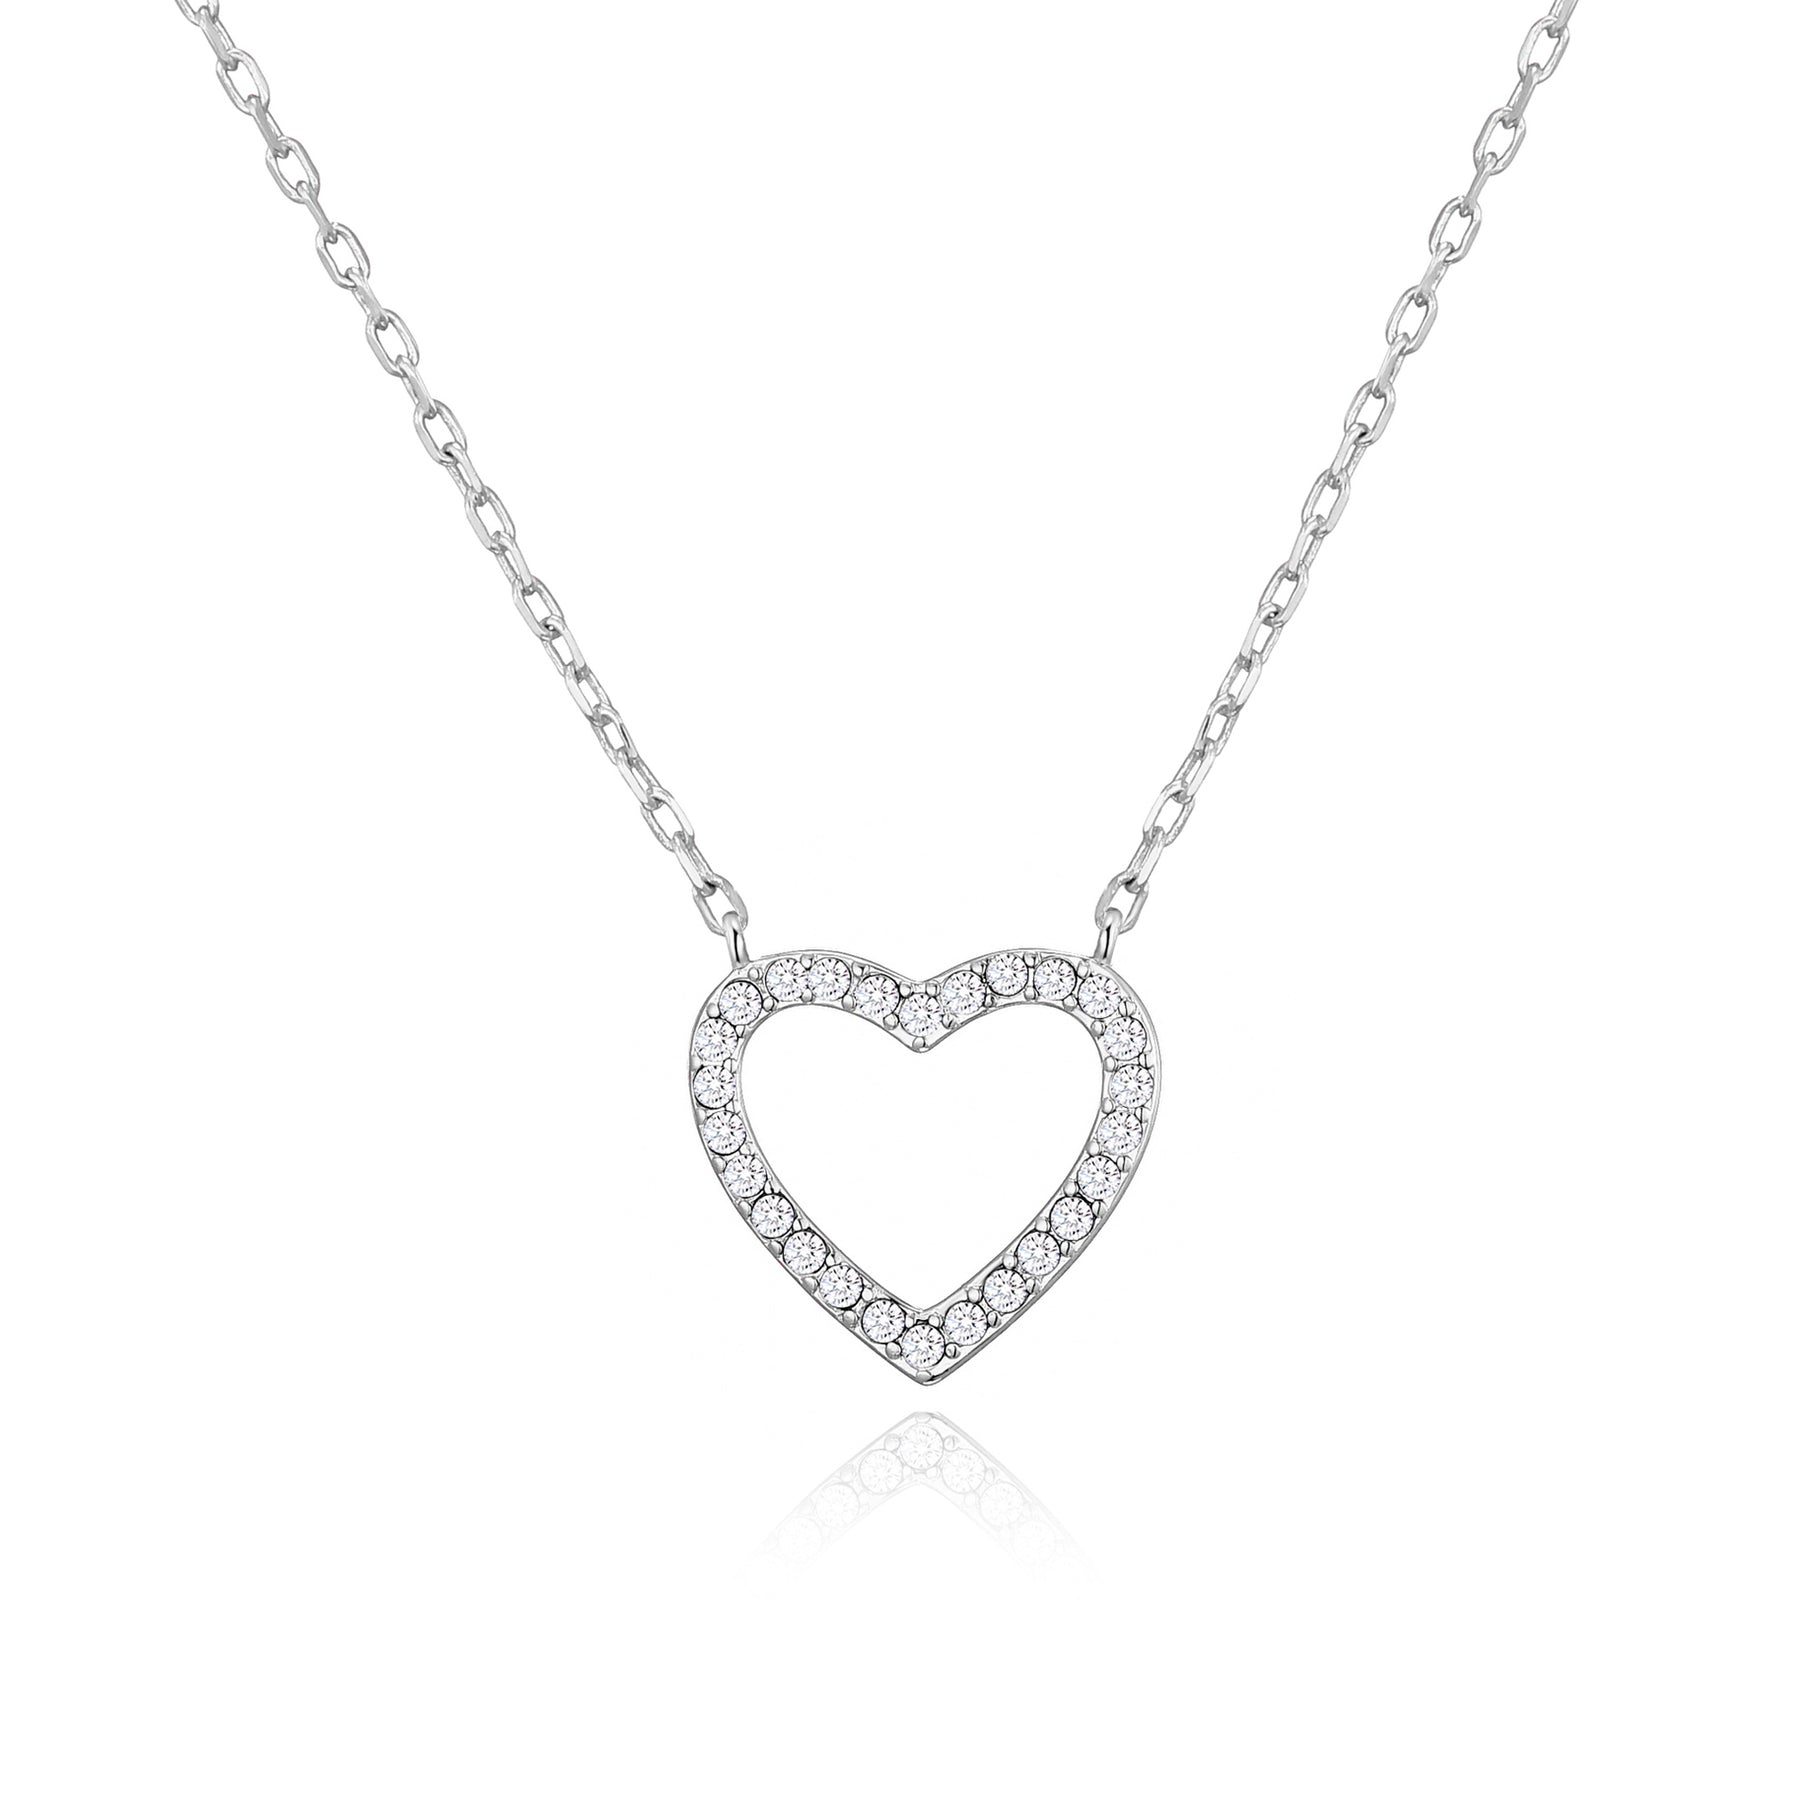 Open Heart Necklace from Philip Jones Jewellery